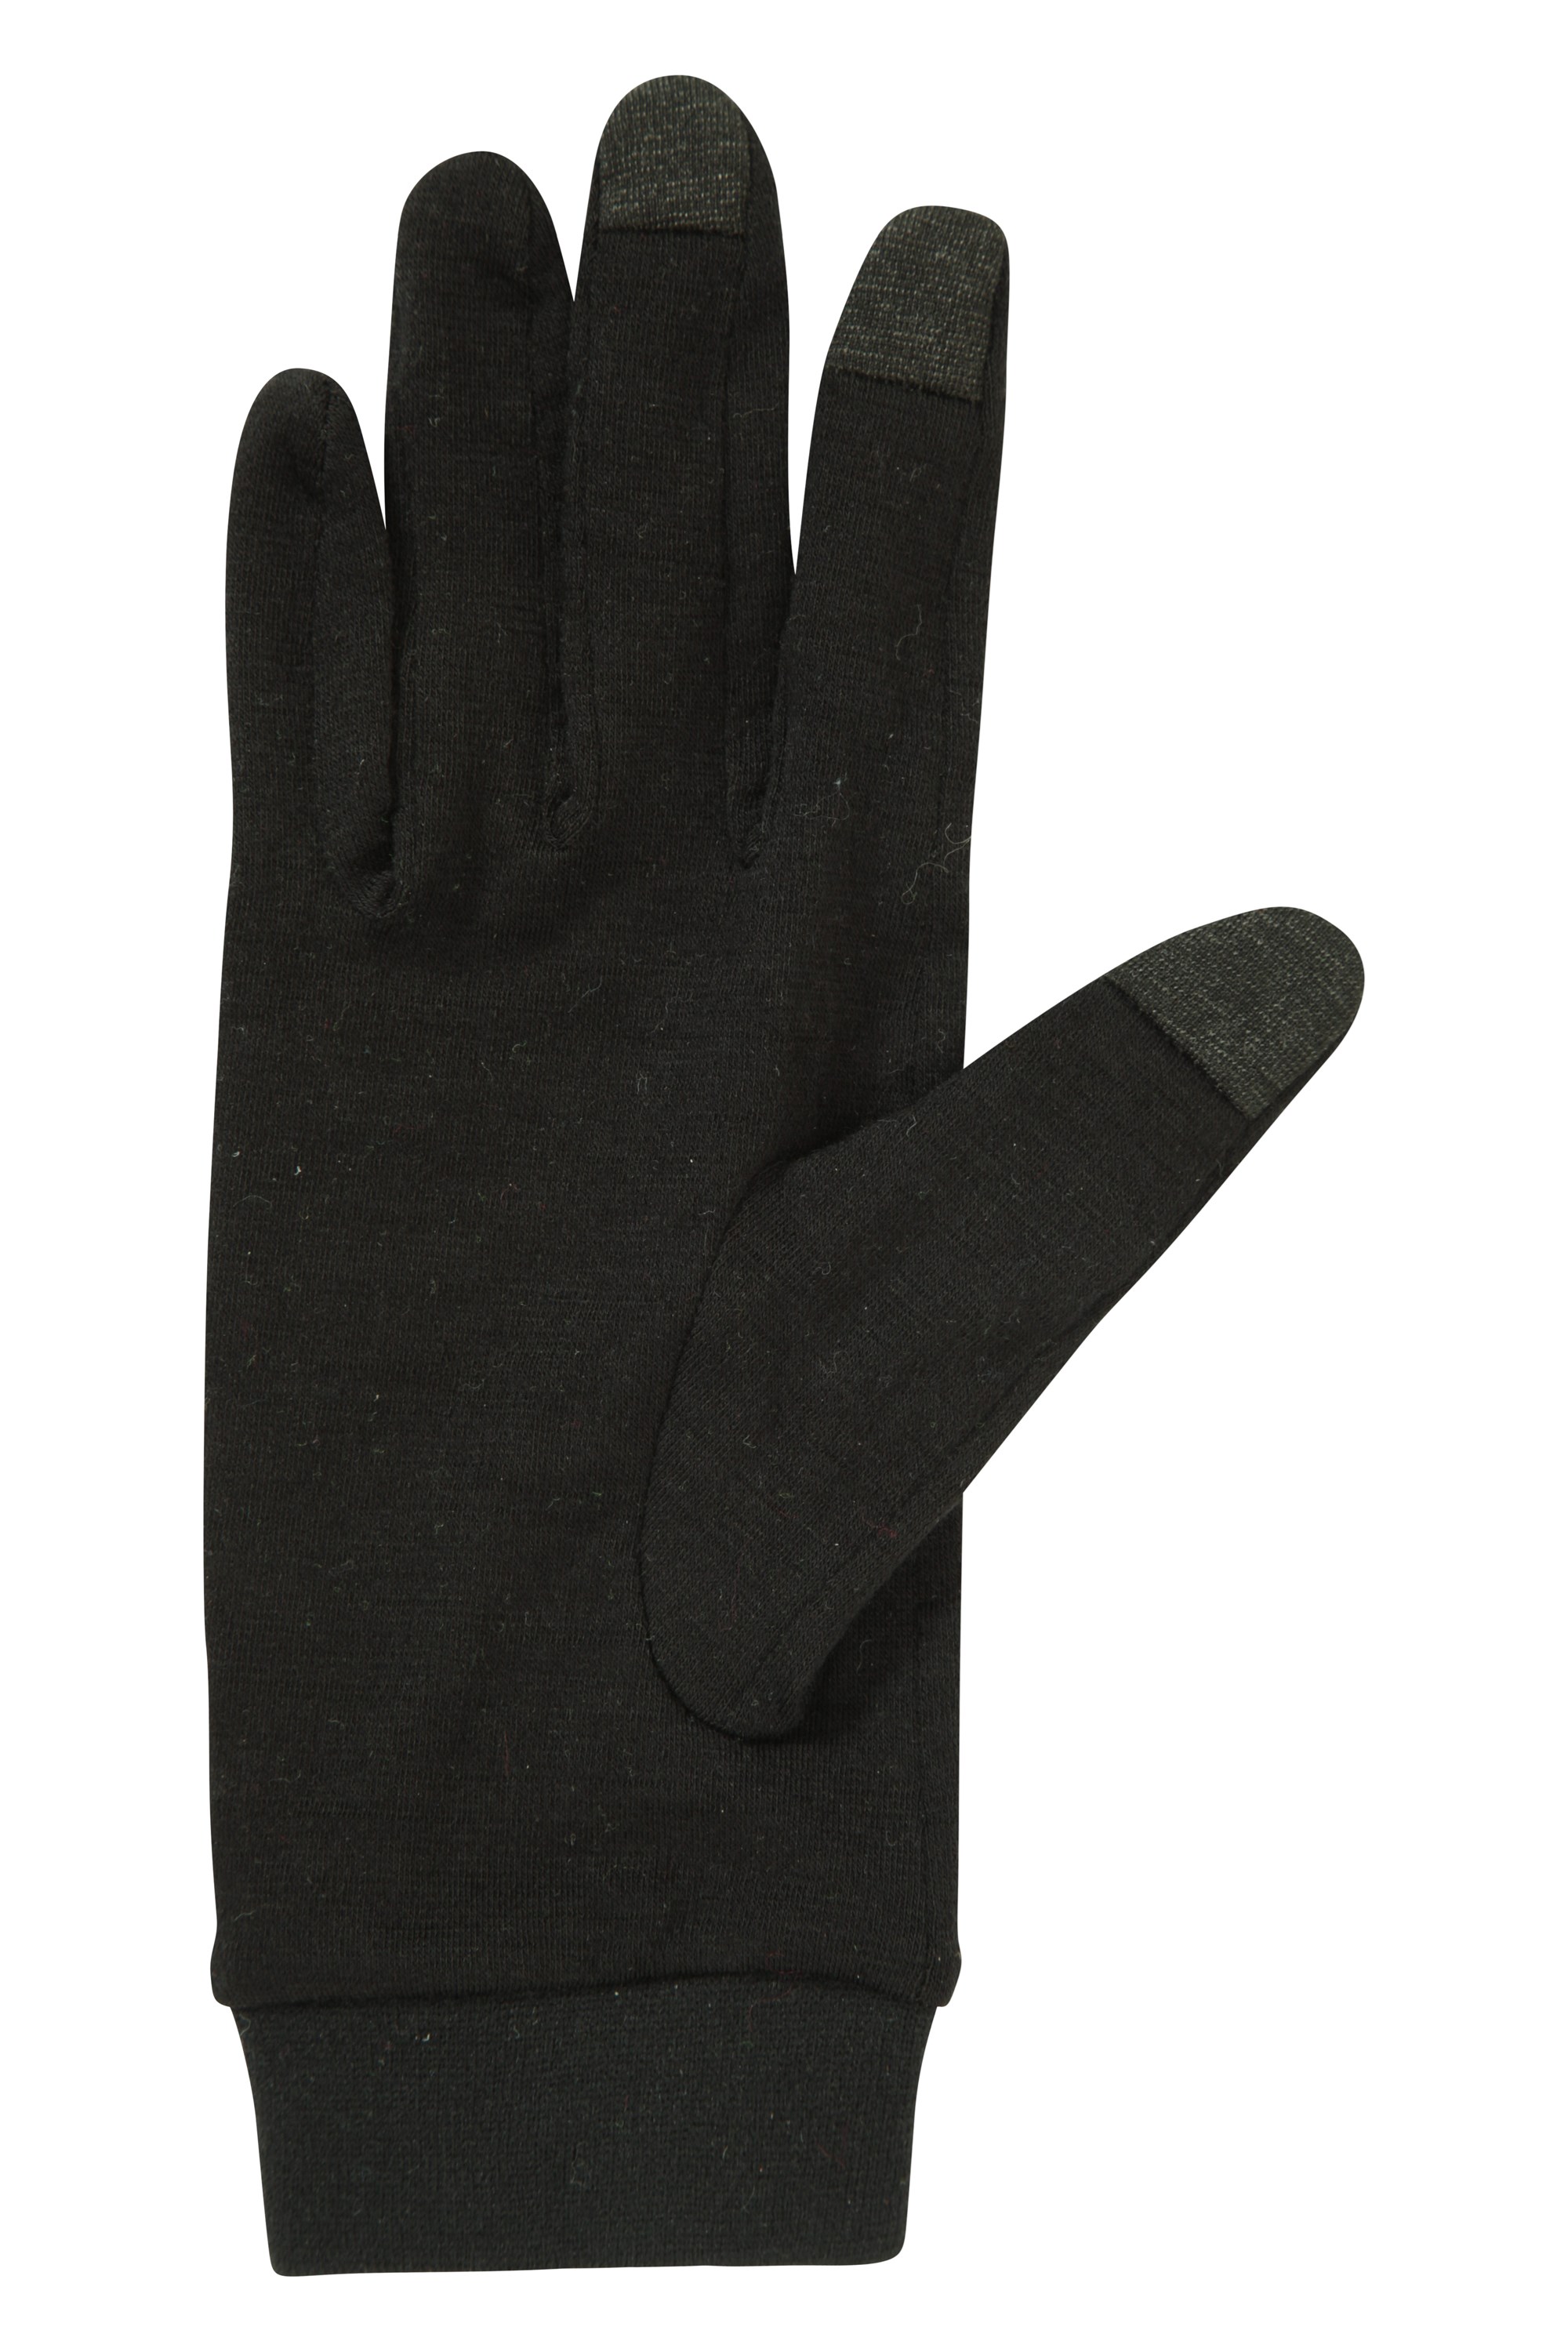 Mountain Warehouse Men Merino Liner Glove Gloves 